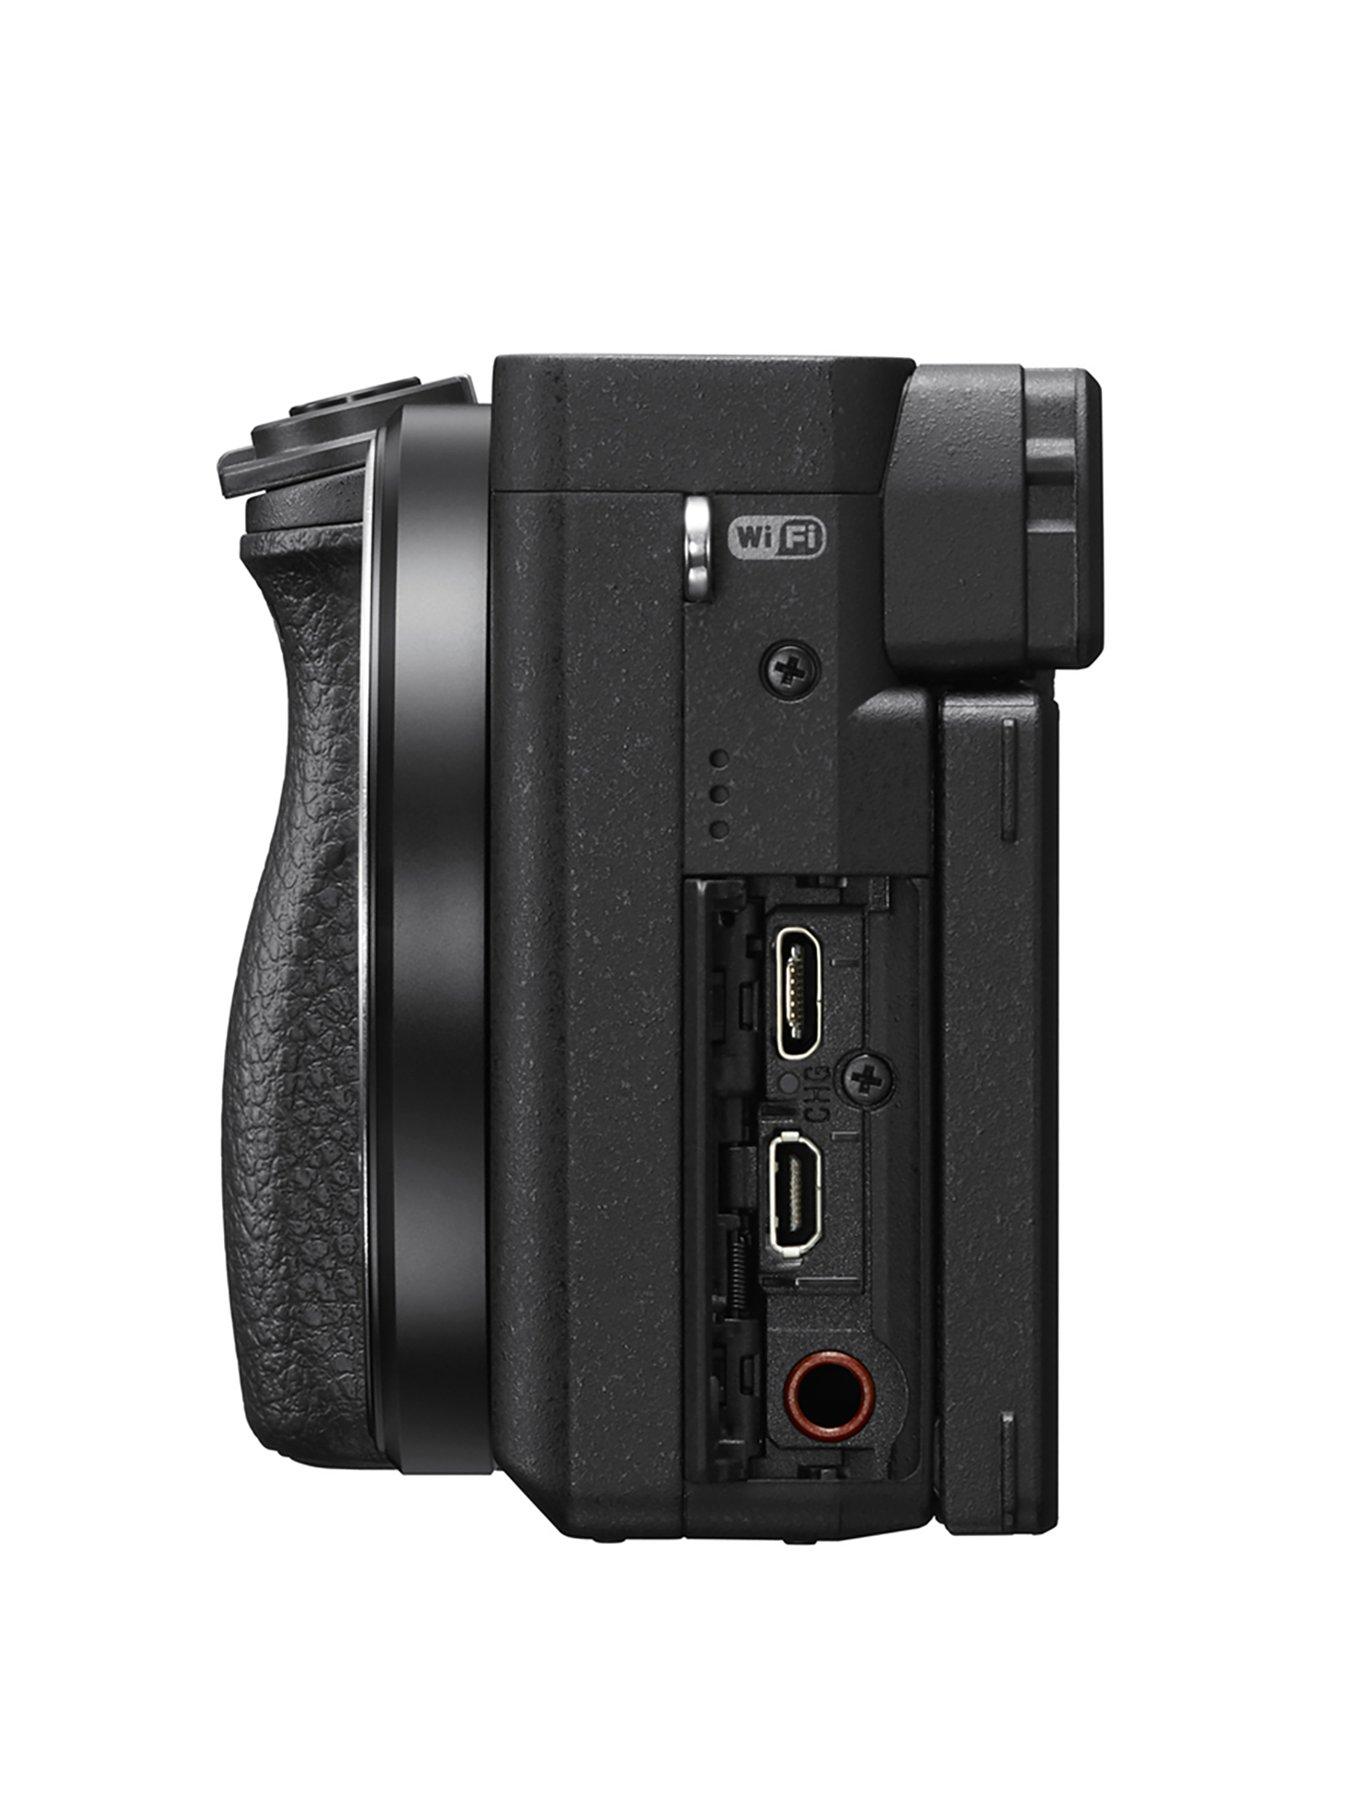 α6400 E-mount Mirrorless Camera with APS-C Sensor and Real-time Eye AF